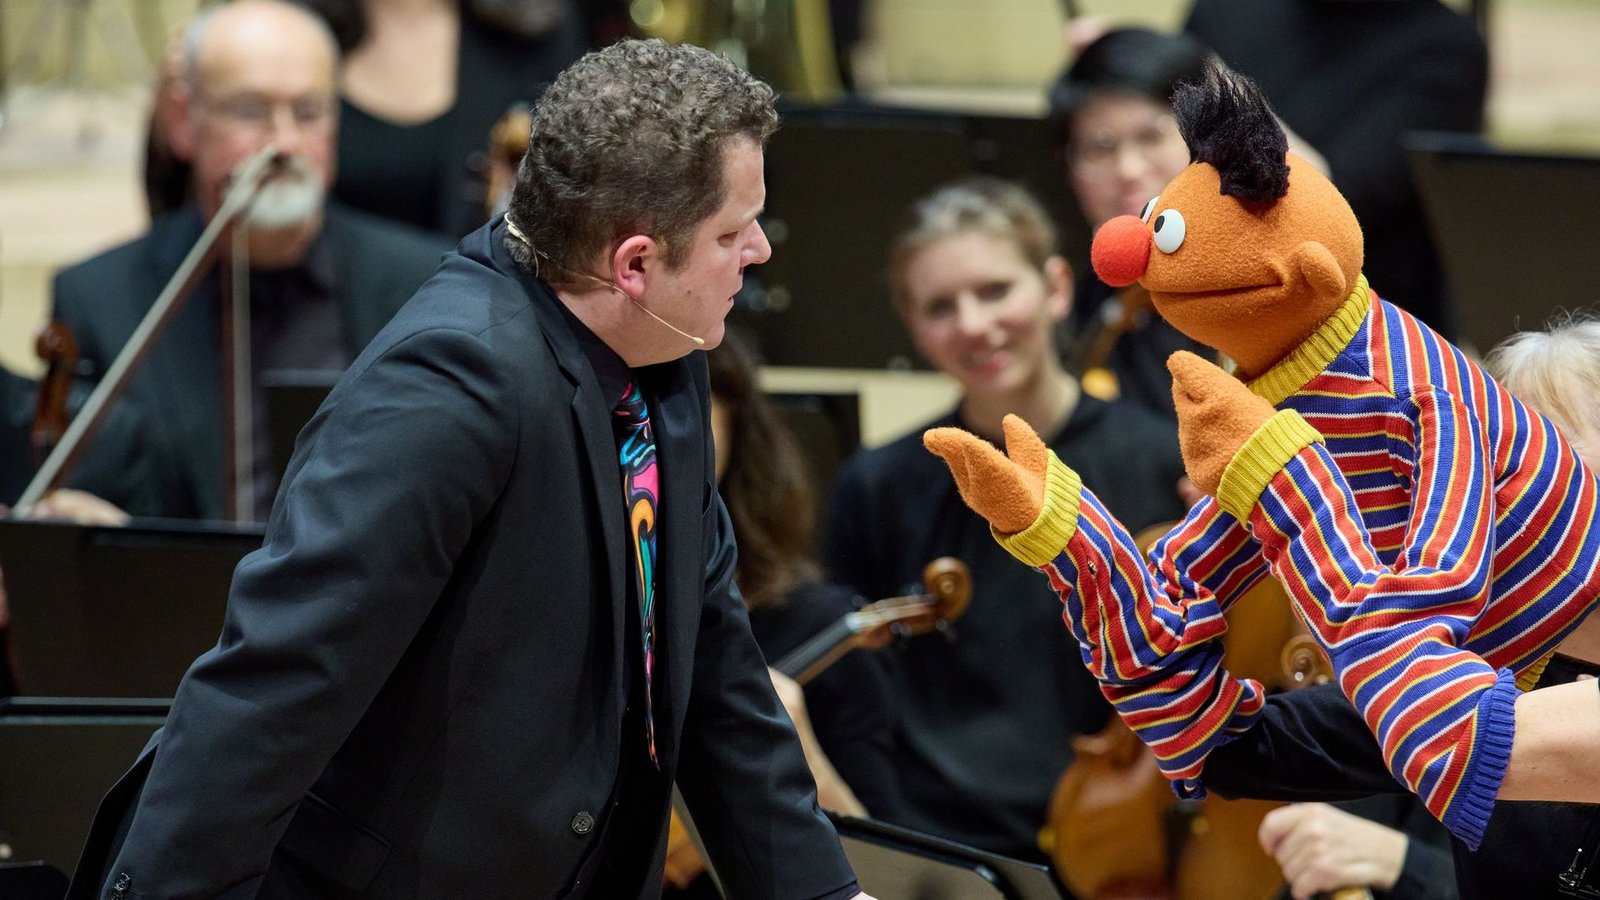 Dirigent David Claessen im Gespräch mit Ernie während des Familienkonzerts im Großen Saal der Elbphilharmonie.Foto: Georg Wendt/dpa